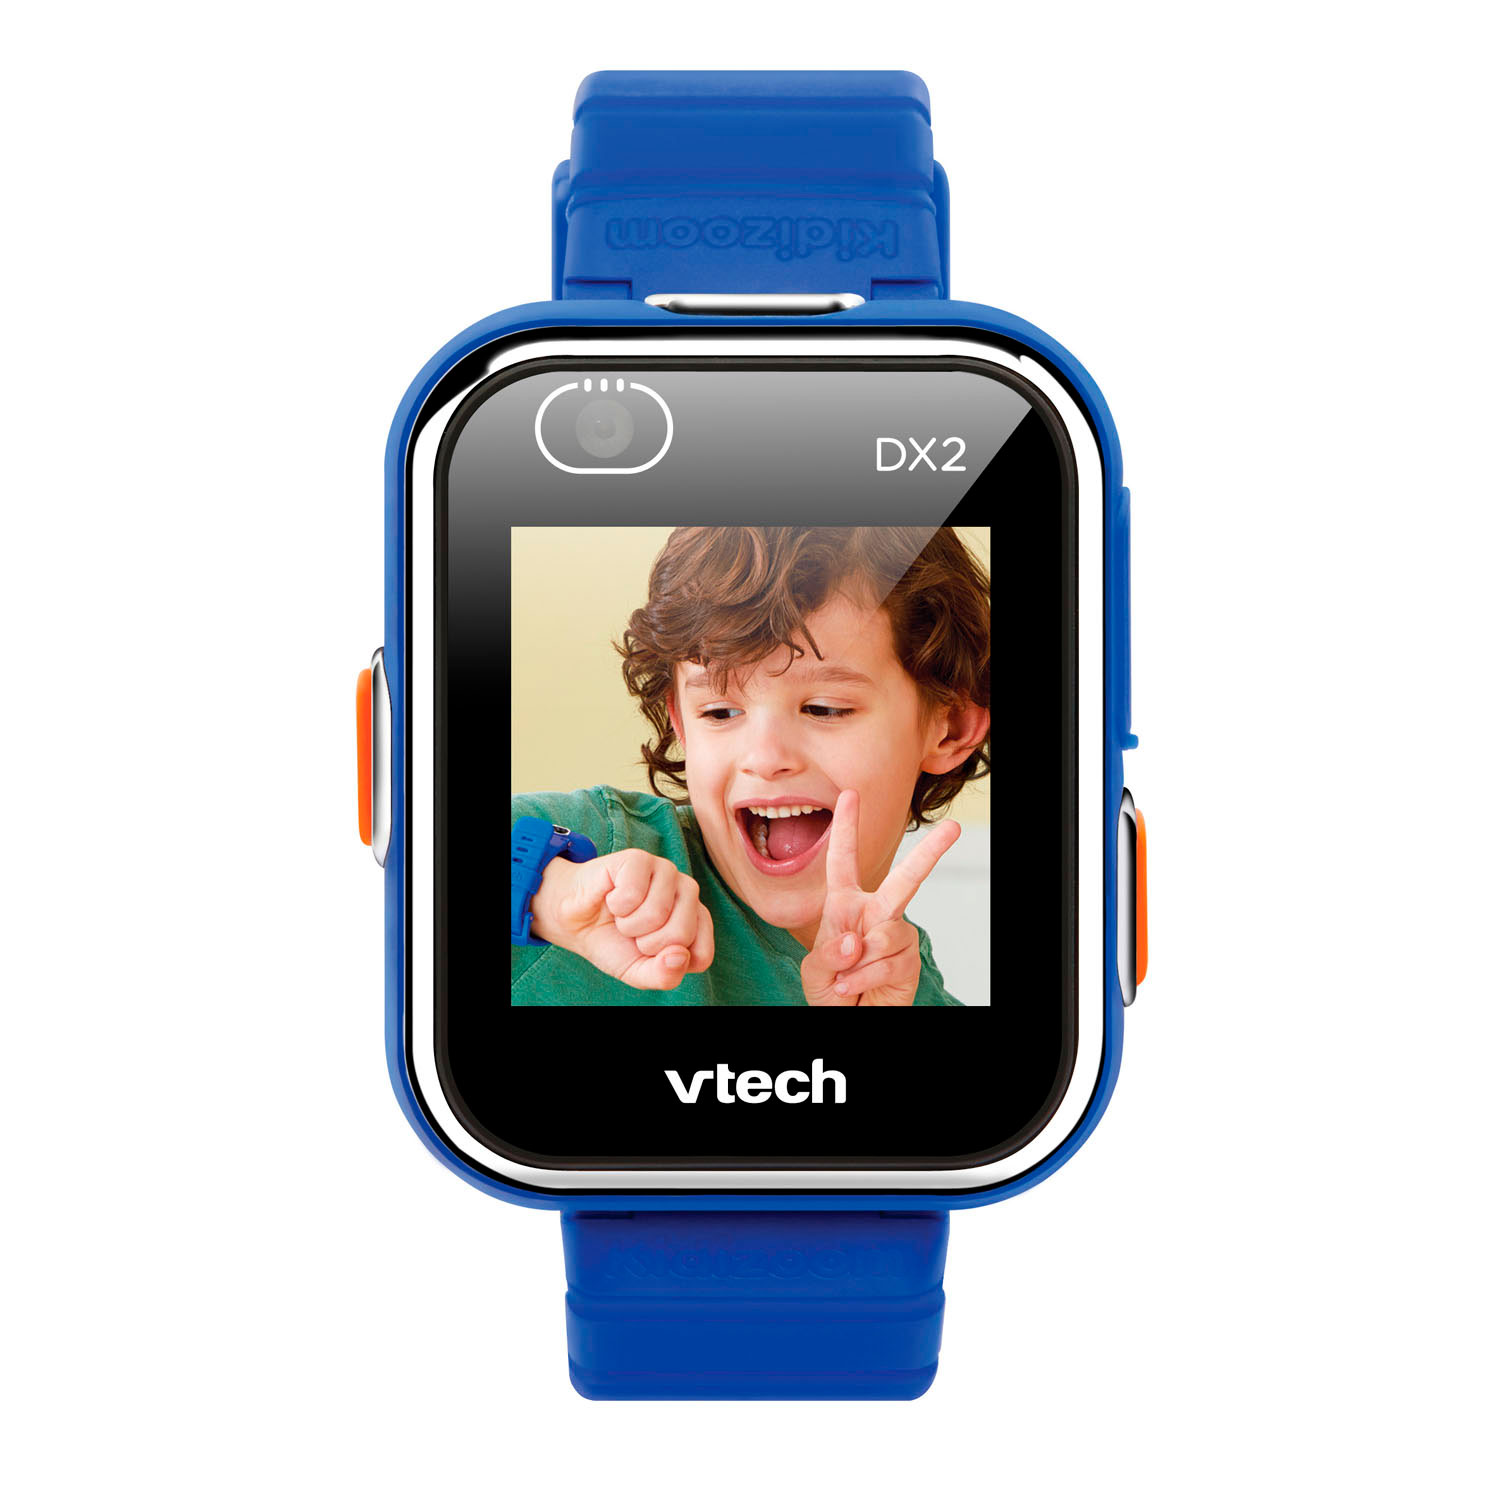 Deskundige vrede Aan de overkant VTech Kidizoom Smartwatch DX2 Blauw online kopen | Lobbes Speelgoed